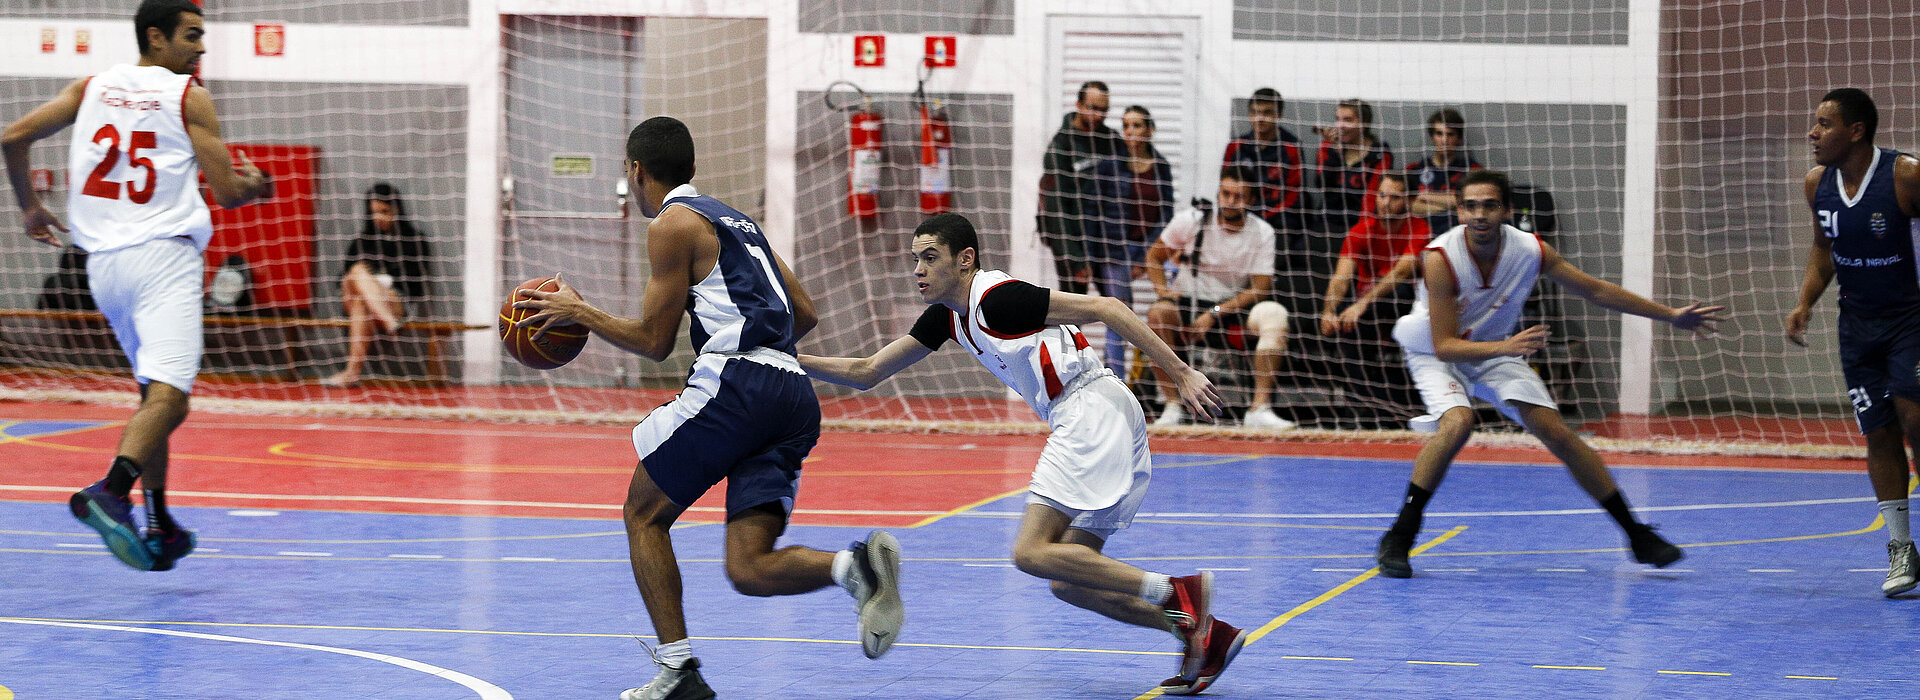 Agenda esportiva tem competição nacional de futsal, Liga Terrão e basquete  - Esportes - Campo Grande News